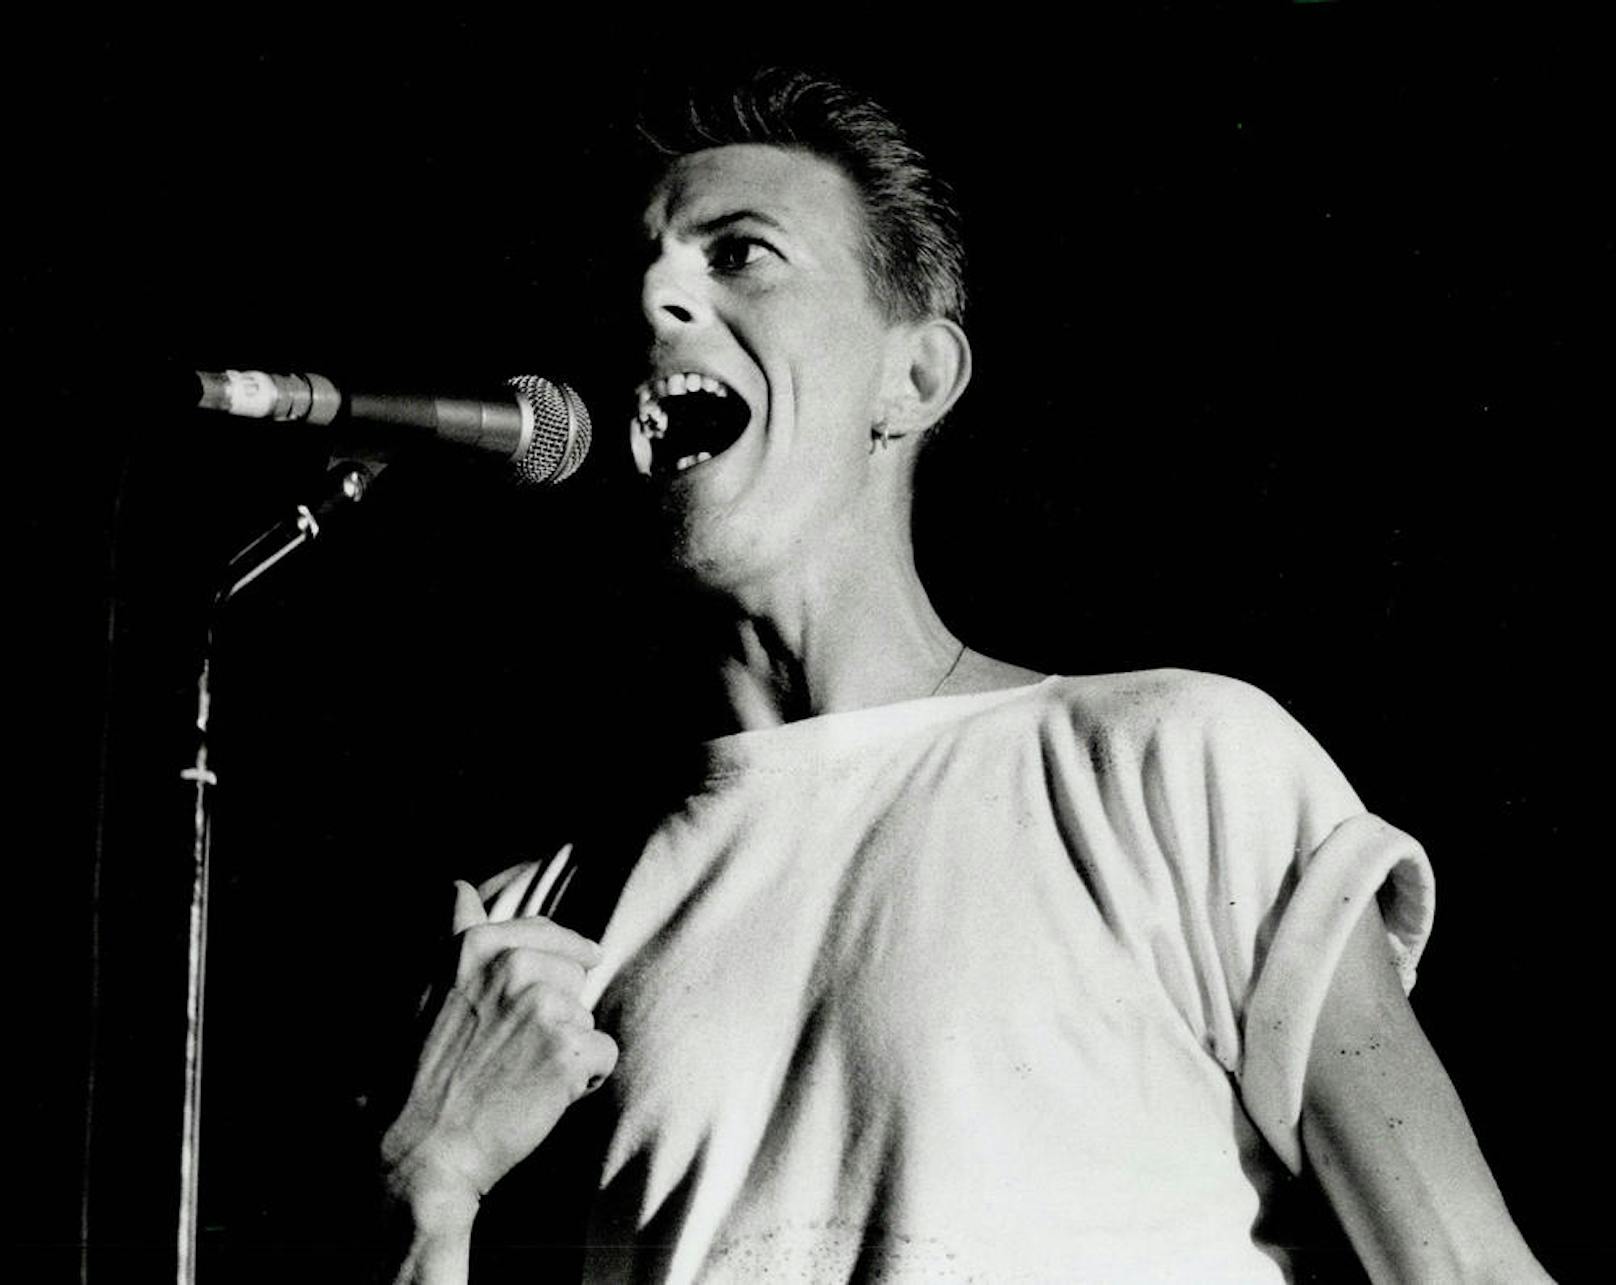 David Bowie starb zwei Tage nach seinem 69. Geburtstag, an dem er auch sein letztes Album "Blackstar" veröffentlicht hatte, an Leberkrebs.